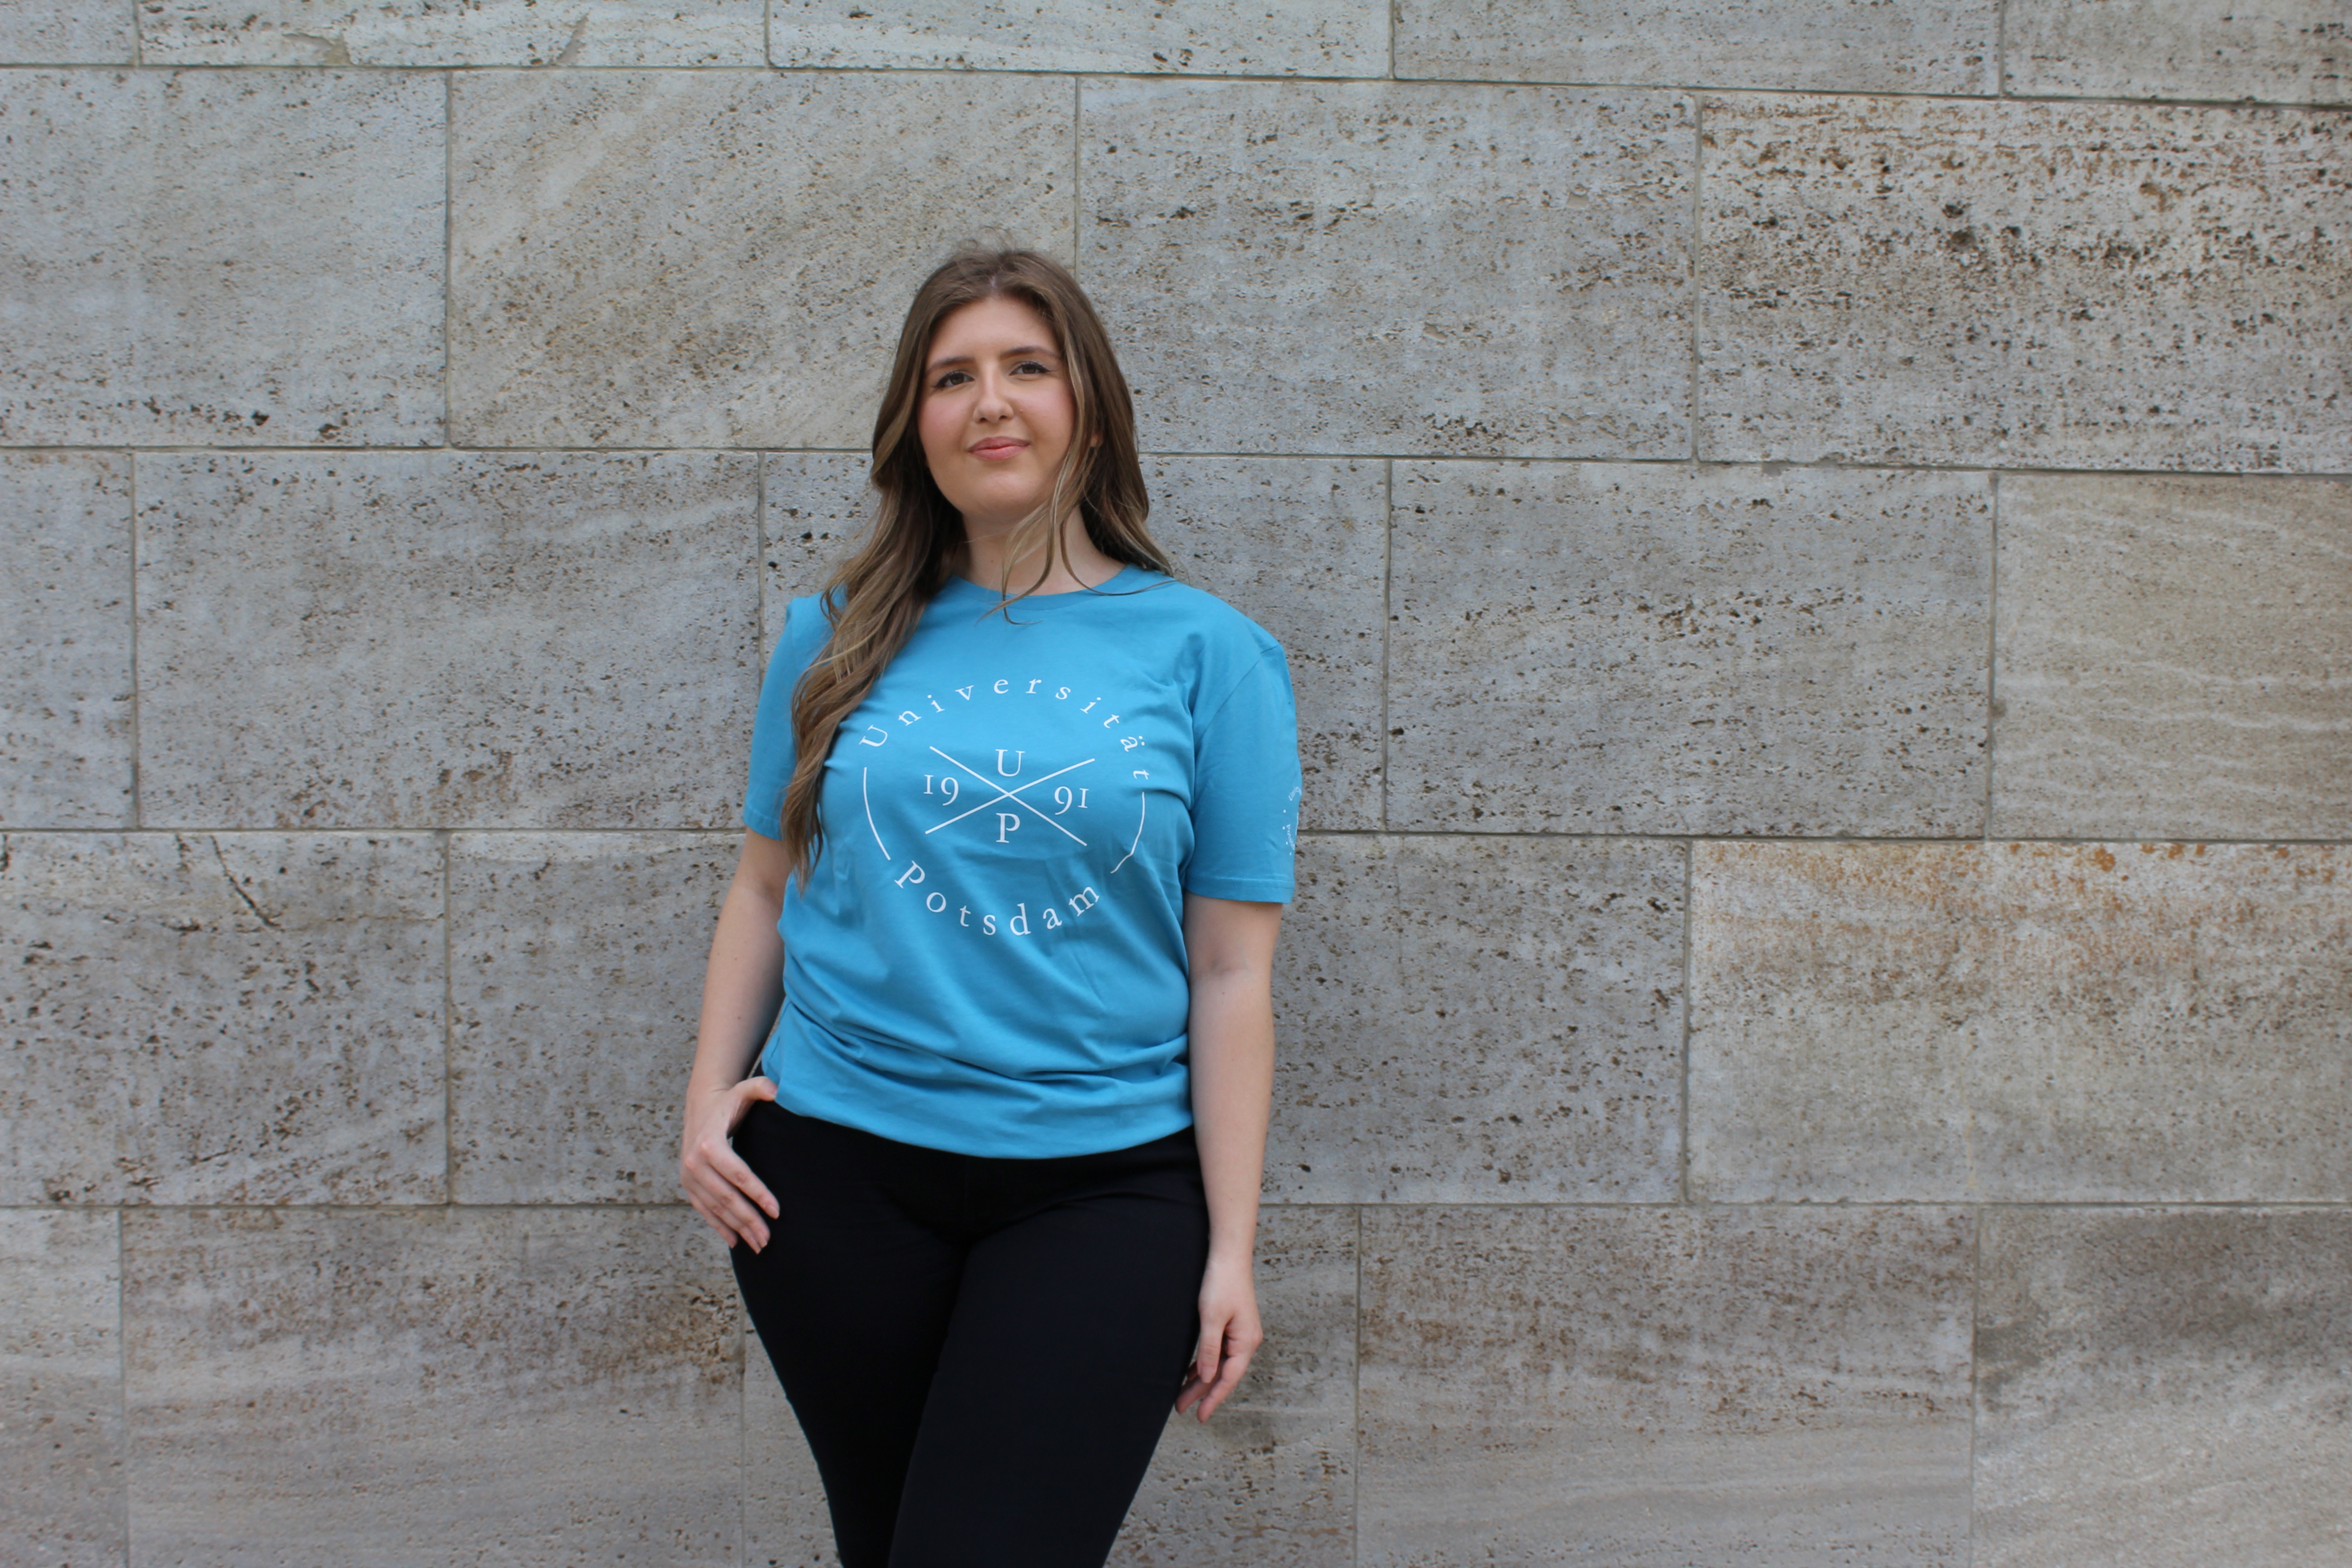 Styler T-shirt. Abgebildet ist eine junge Frau, die vor einer Wand posiert. Sie trägt ein blaues Styler T-shirt.